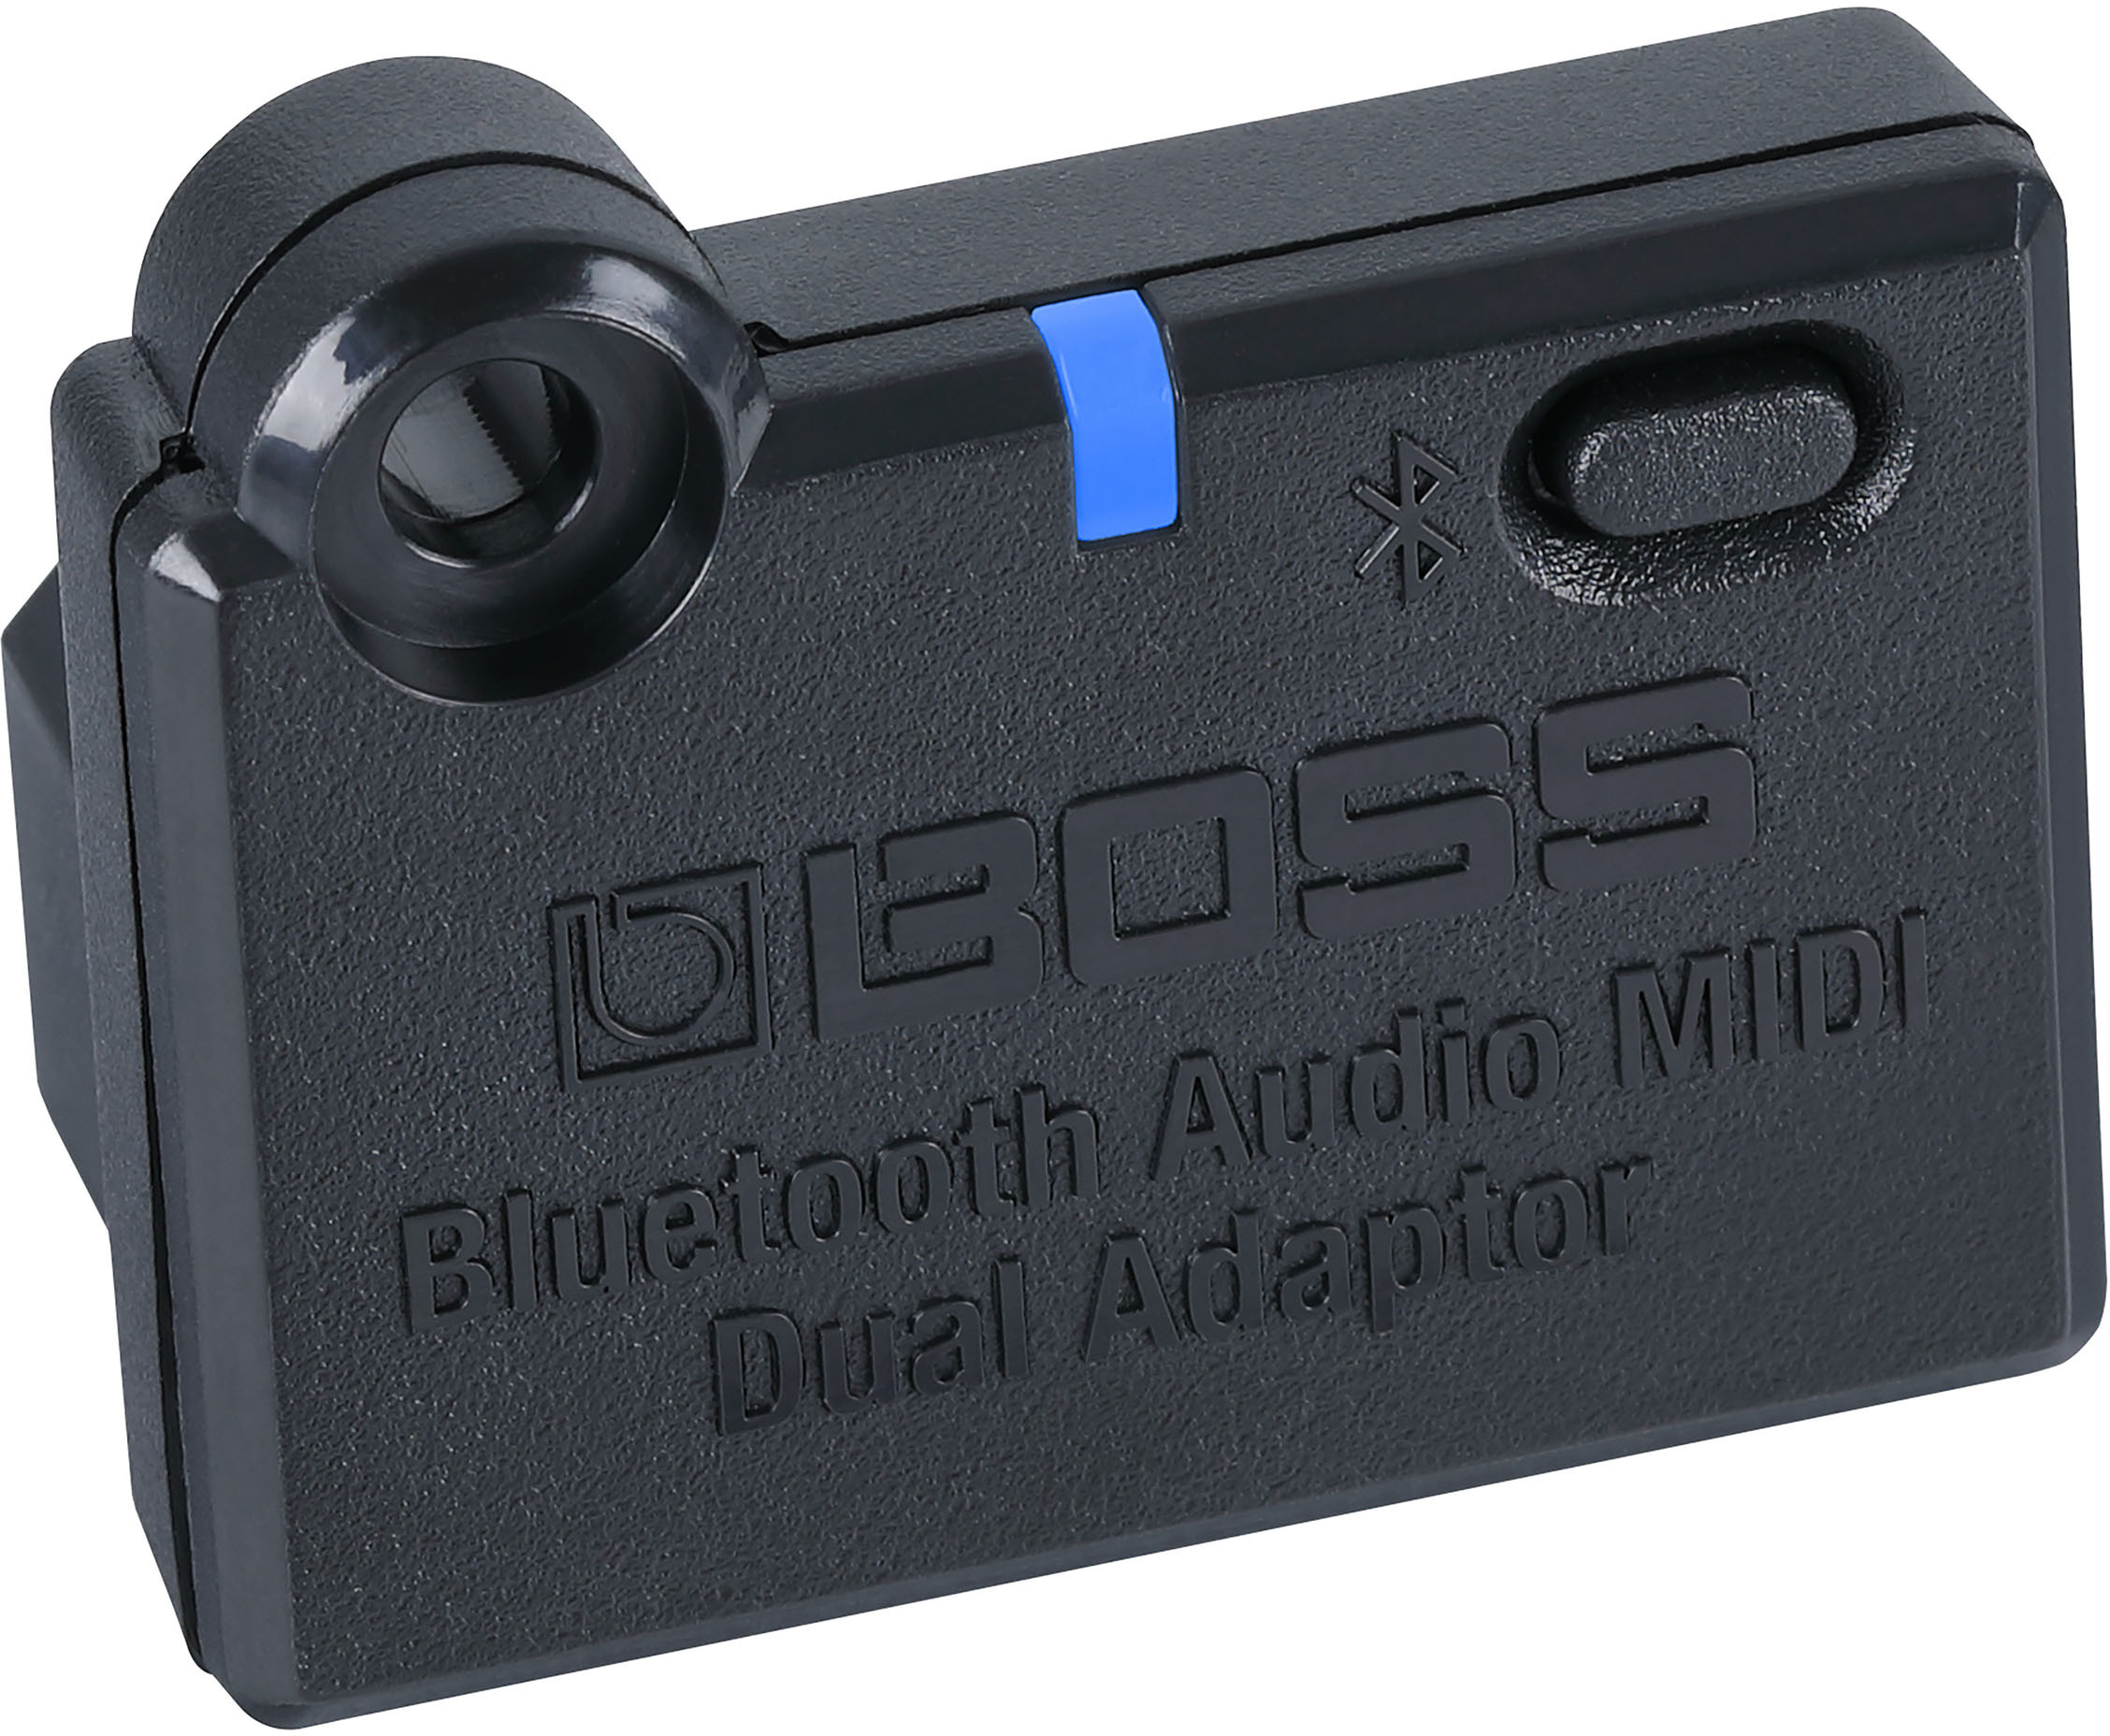 Boss Bluetooth Audio Adaptator - Divers Accessoires & PiÈces Pour Effets - Main picture